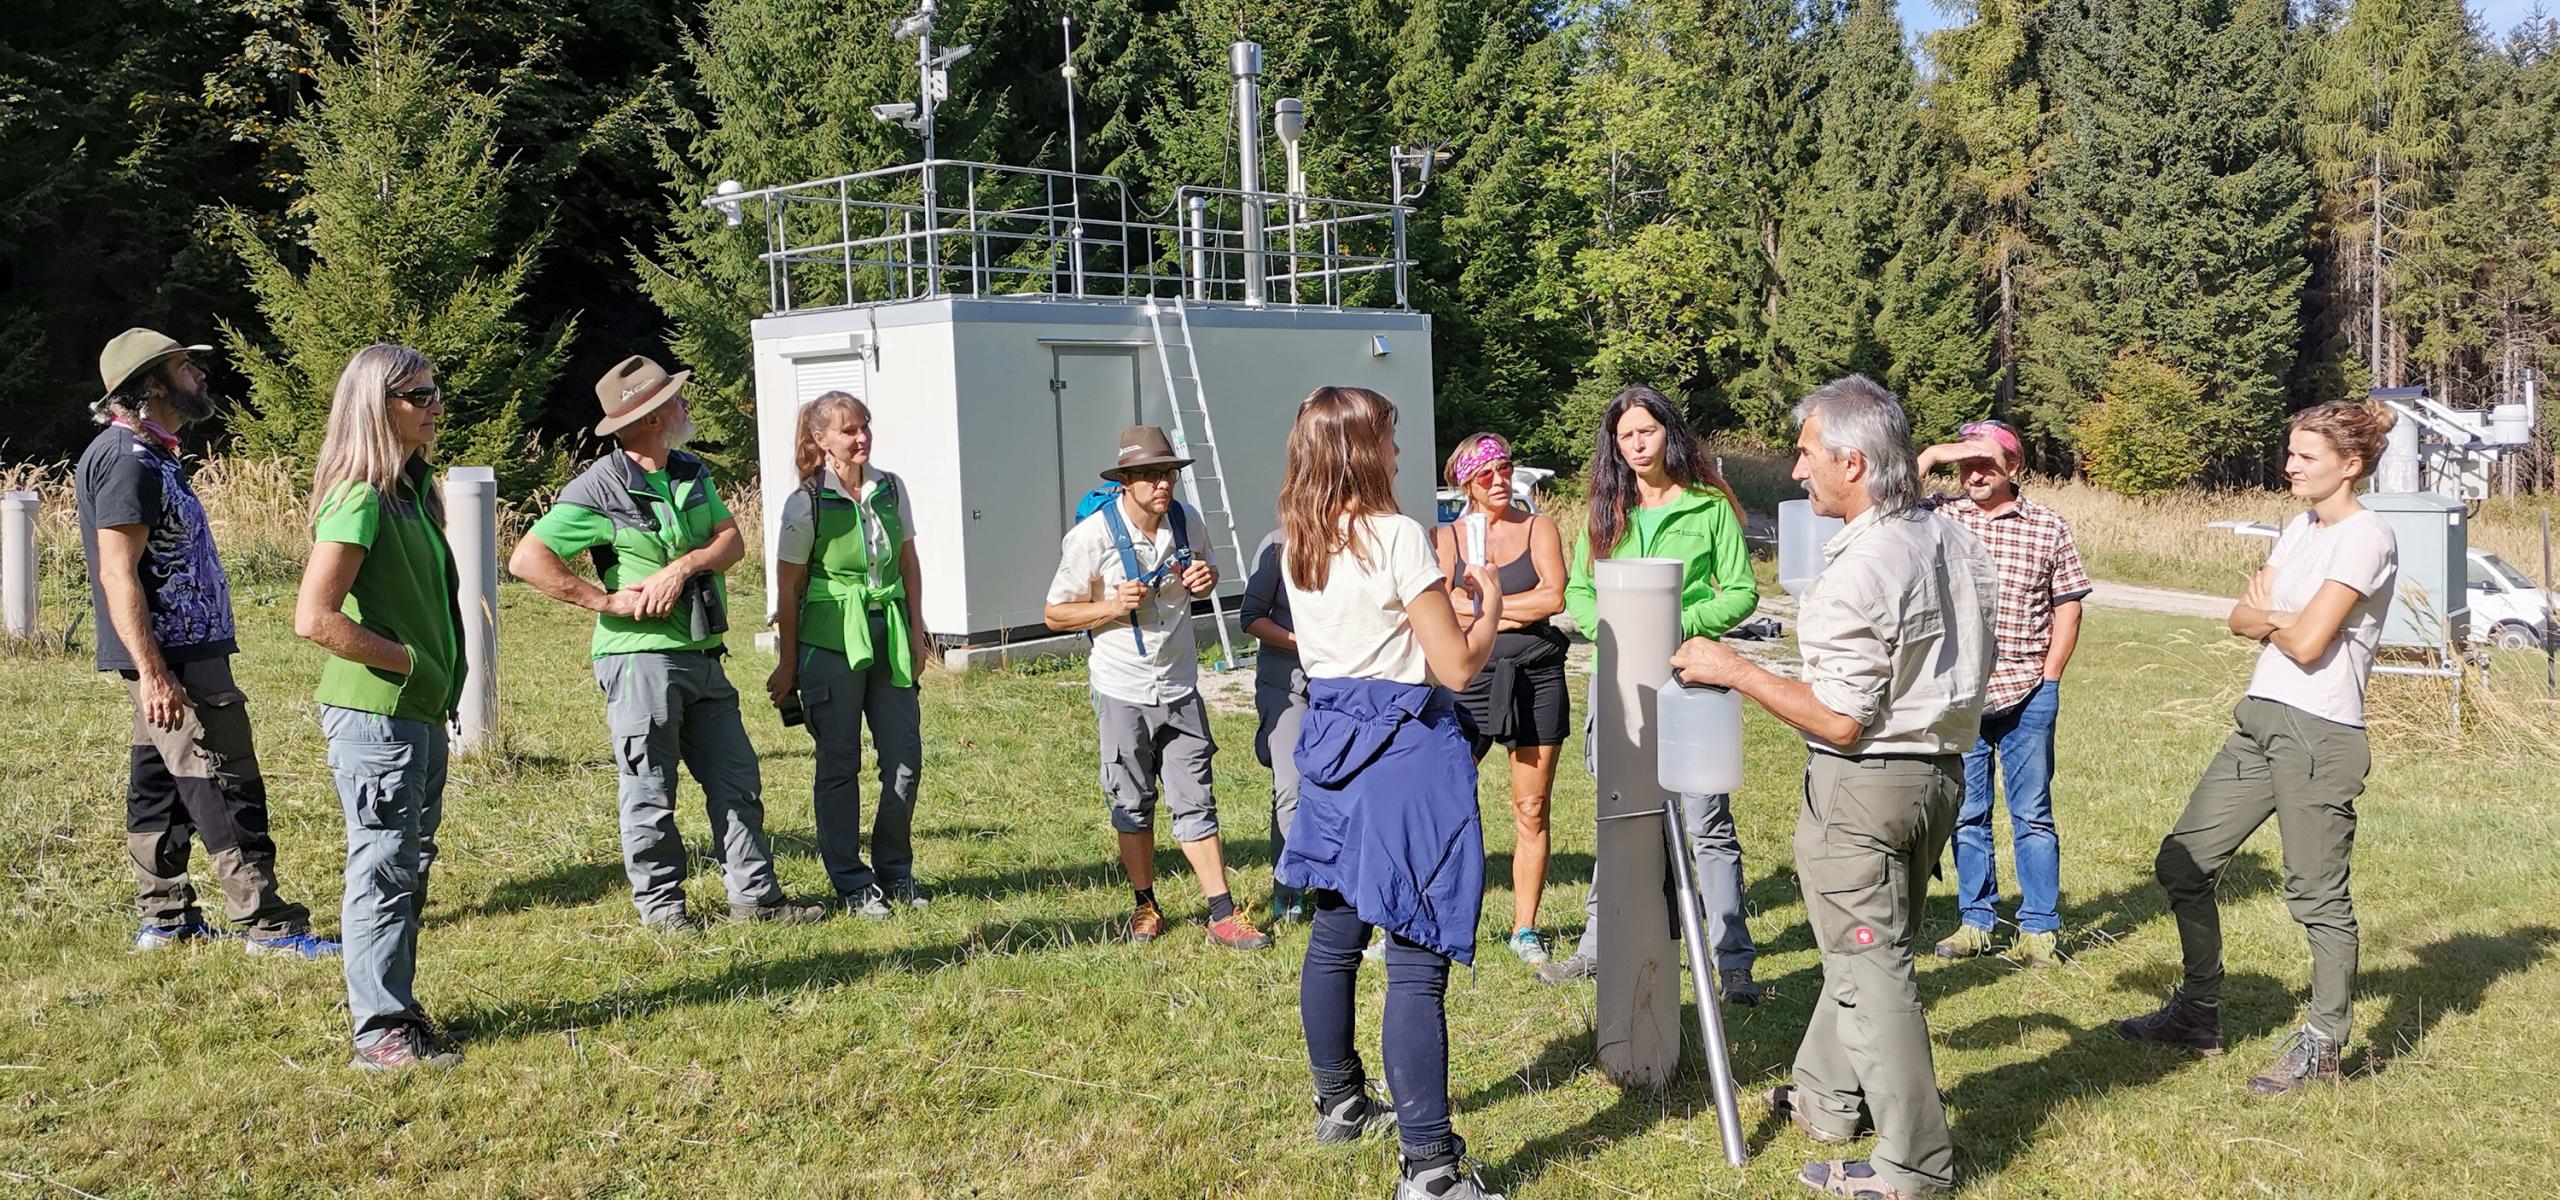 Nationalpark Mitarbeiter erklärt einer Gruppe eine Messstation